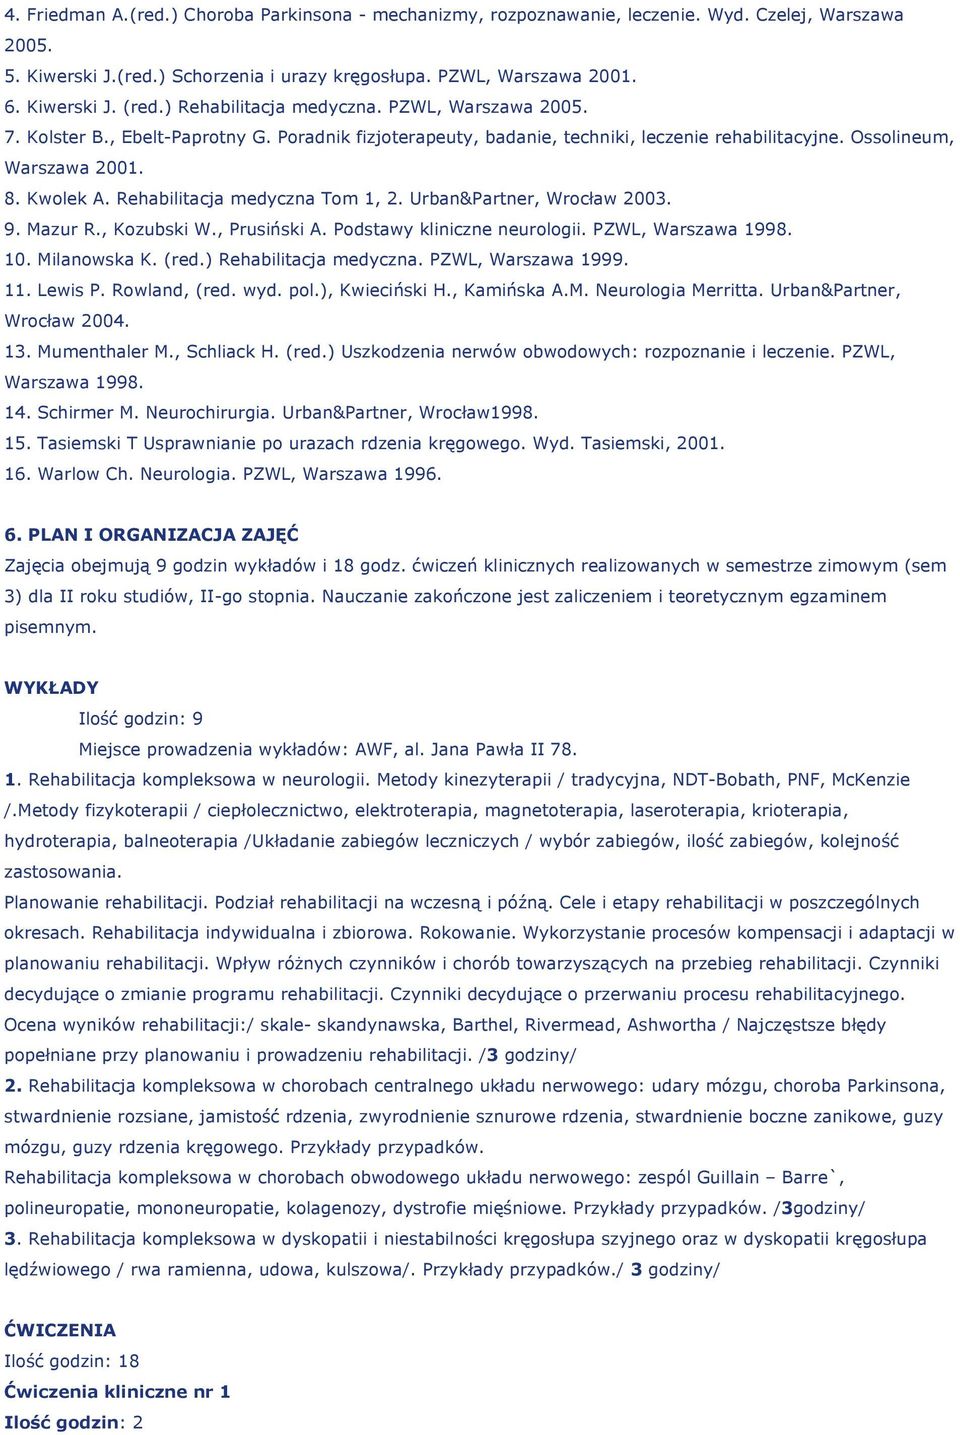 Rehabilitacja medyczna Tom 1, 2. Urban&Partner, Wrocław 2003. 9. Mazur R., Kozubski W., Prusiński A. Podstawy kliniczne neurologii. PZWL, Warszawa 1998. 10. Milanowska K. (red.